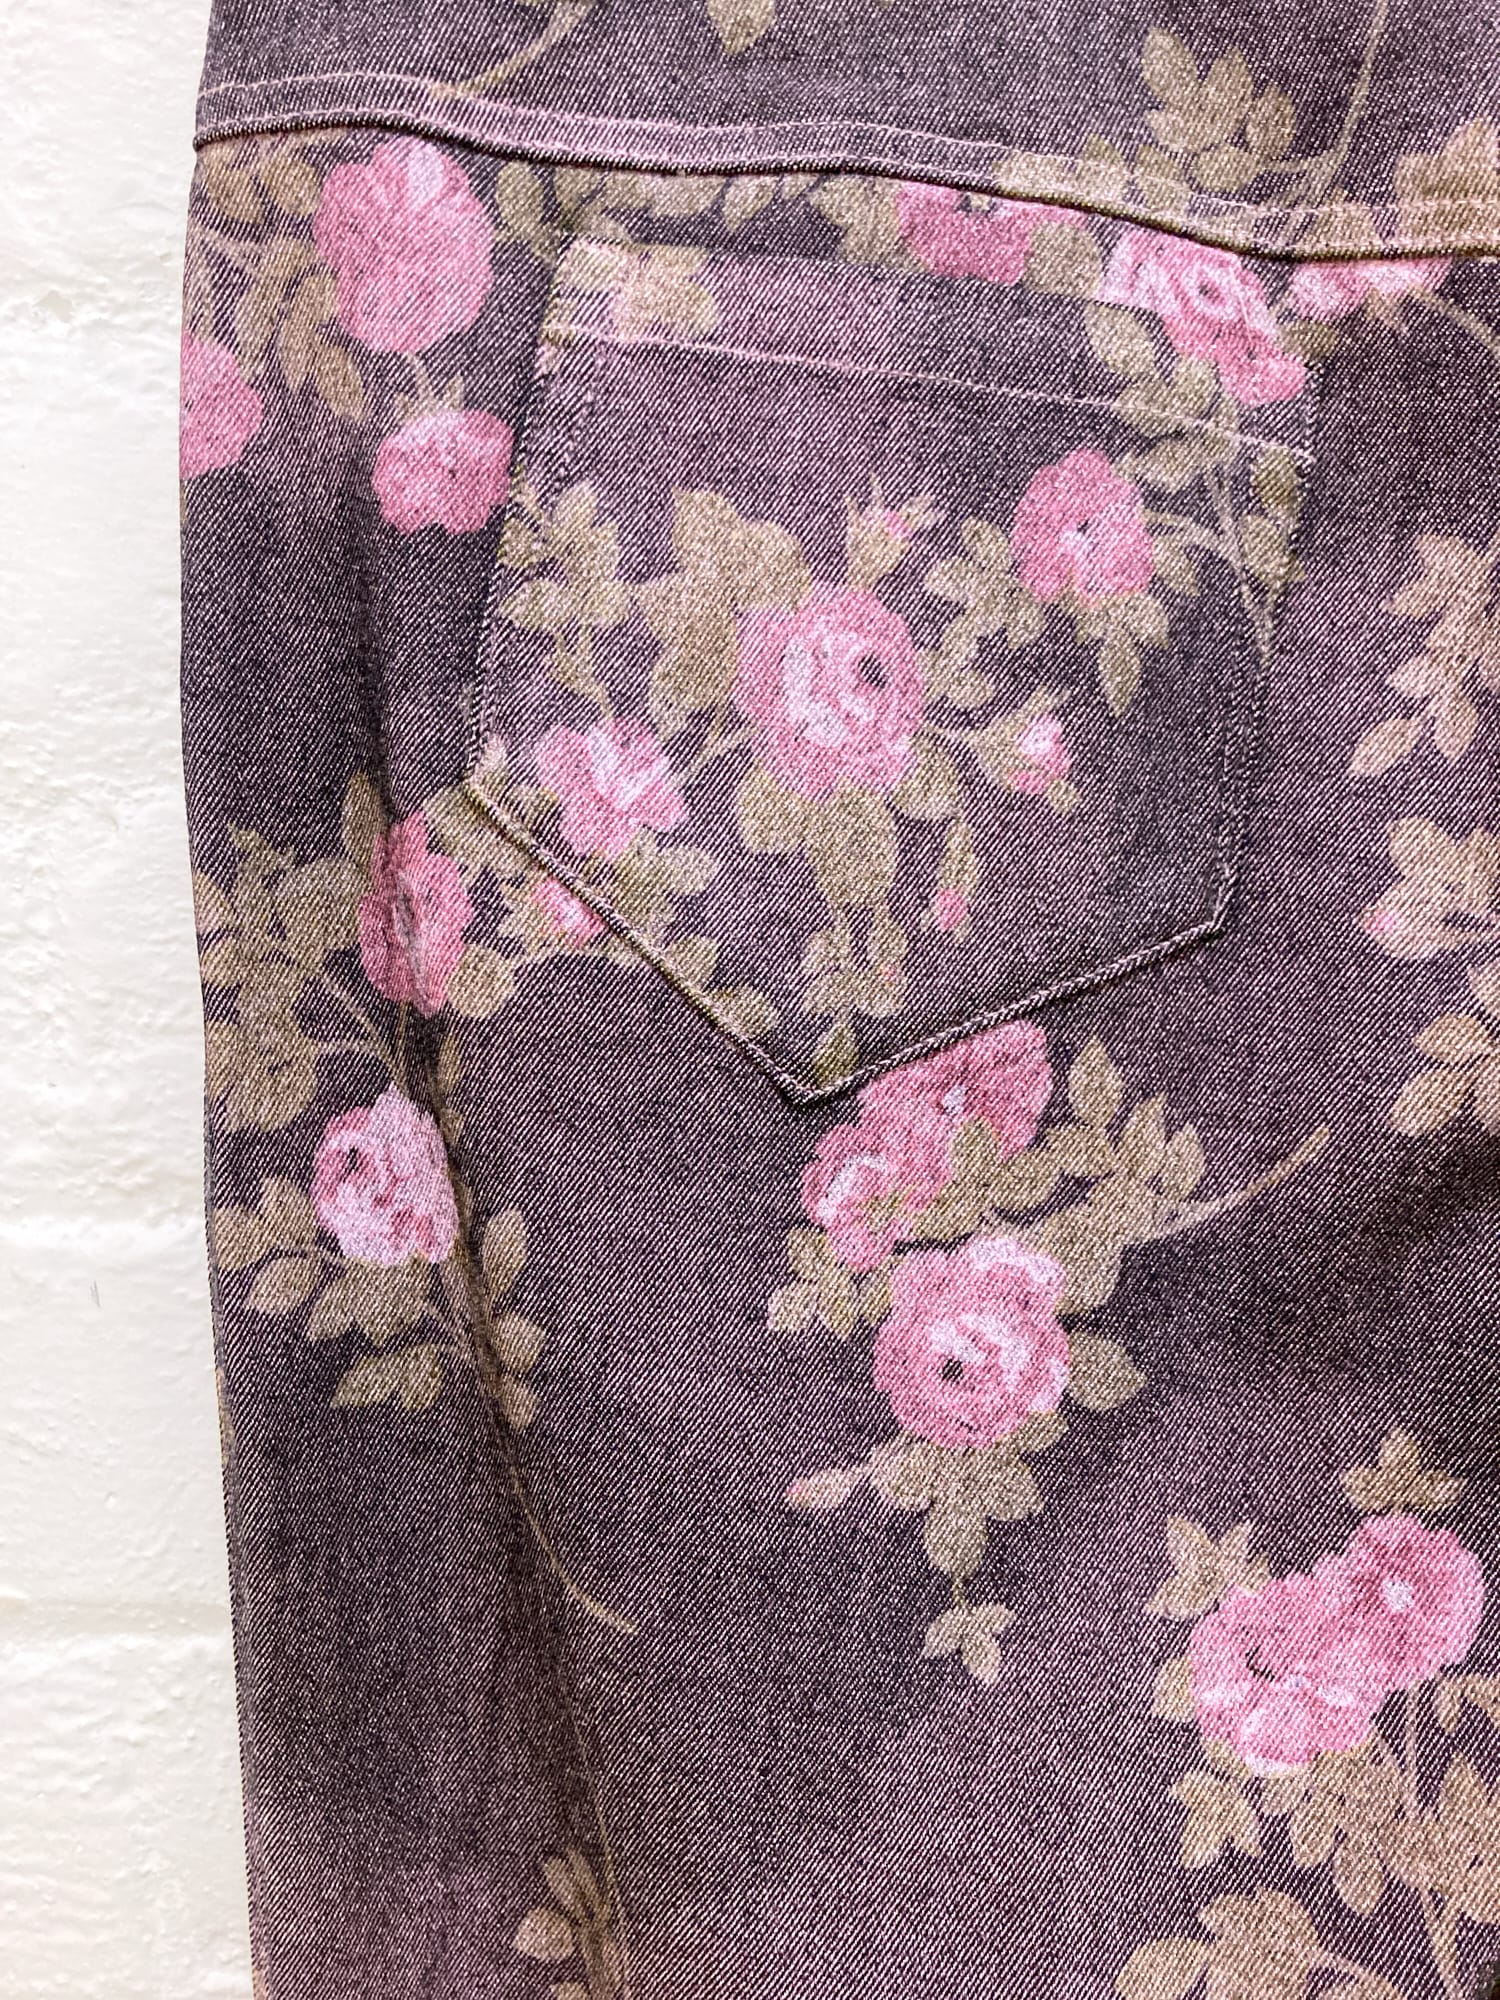 Evex by Krizia purple pink denim floral print trucker jacket jeans suit